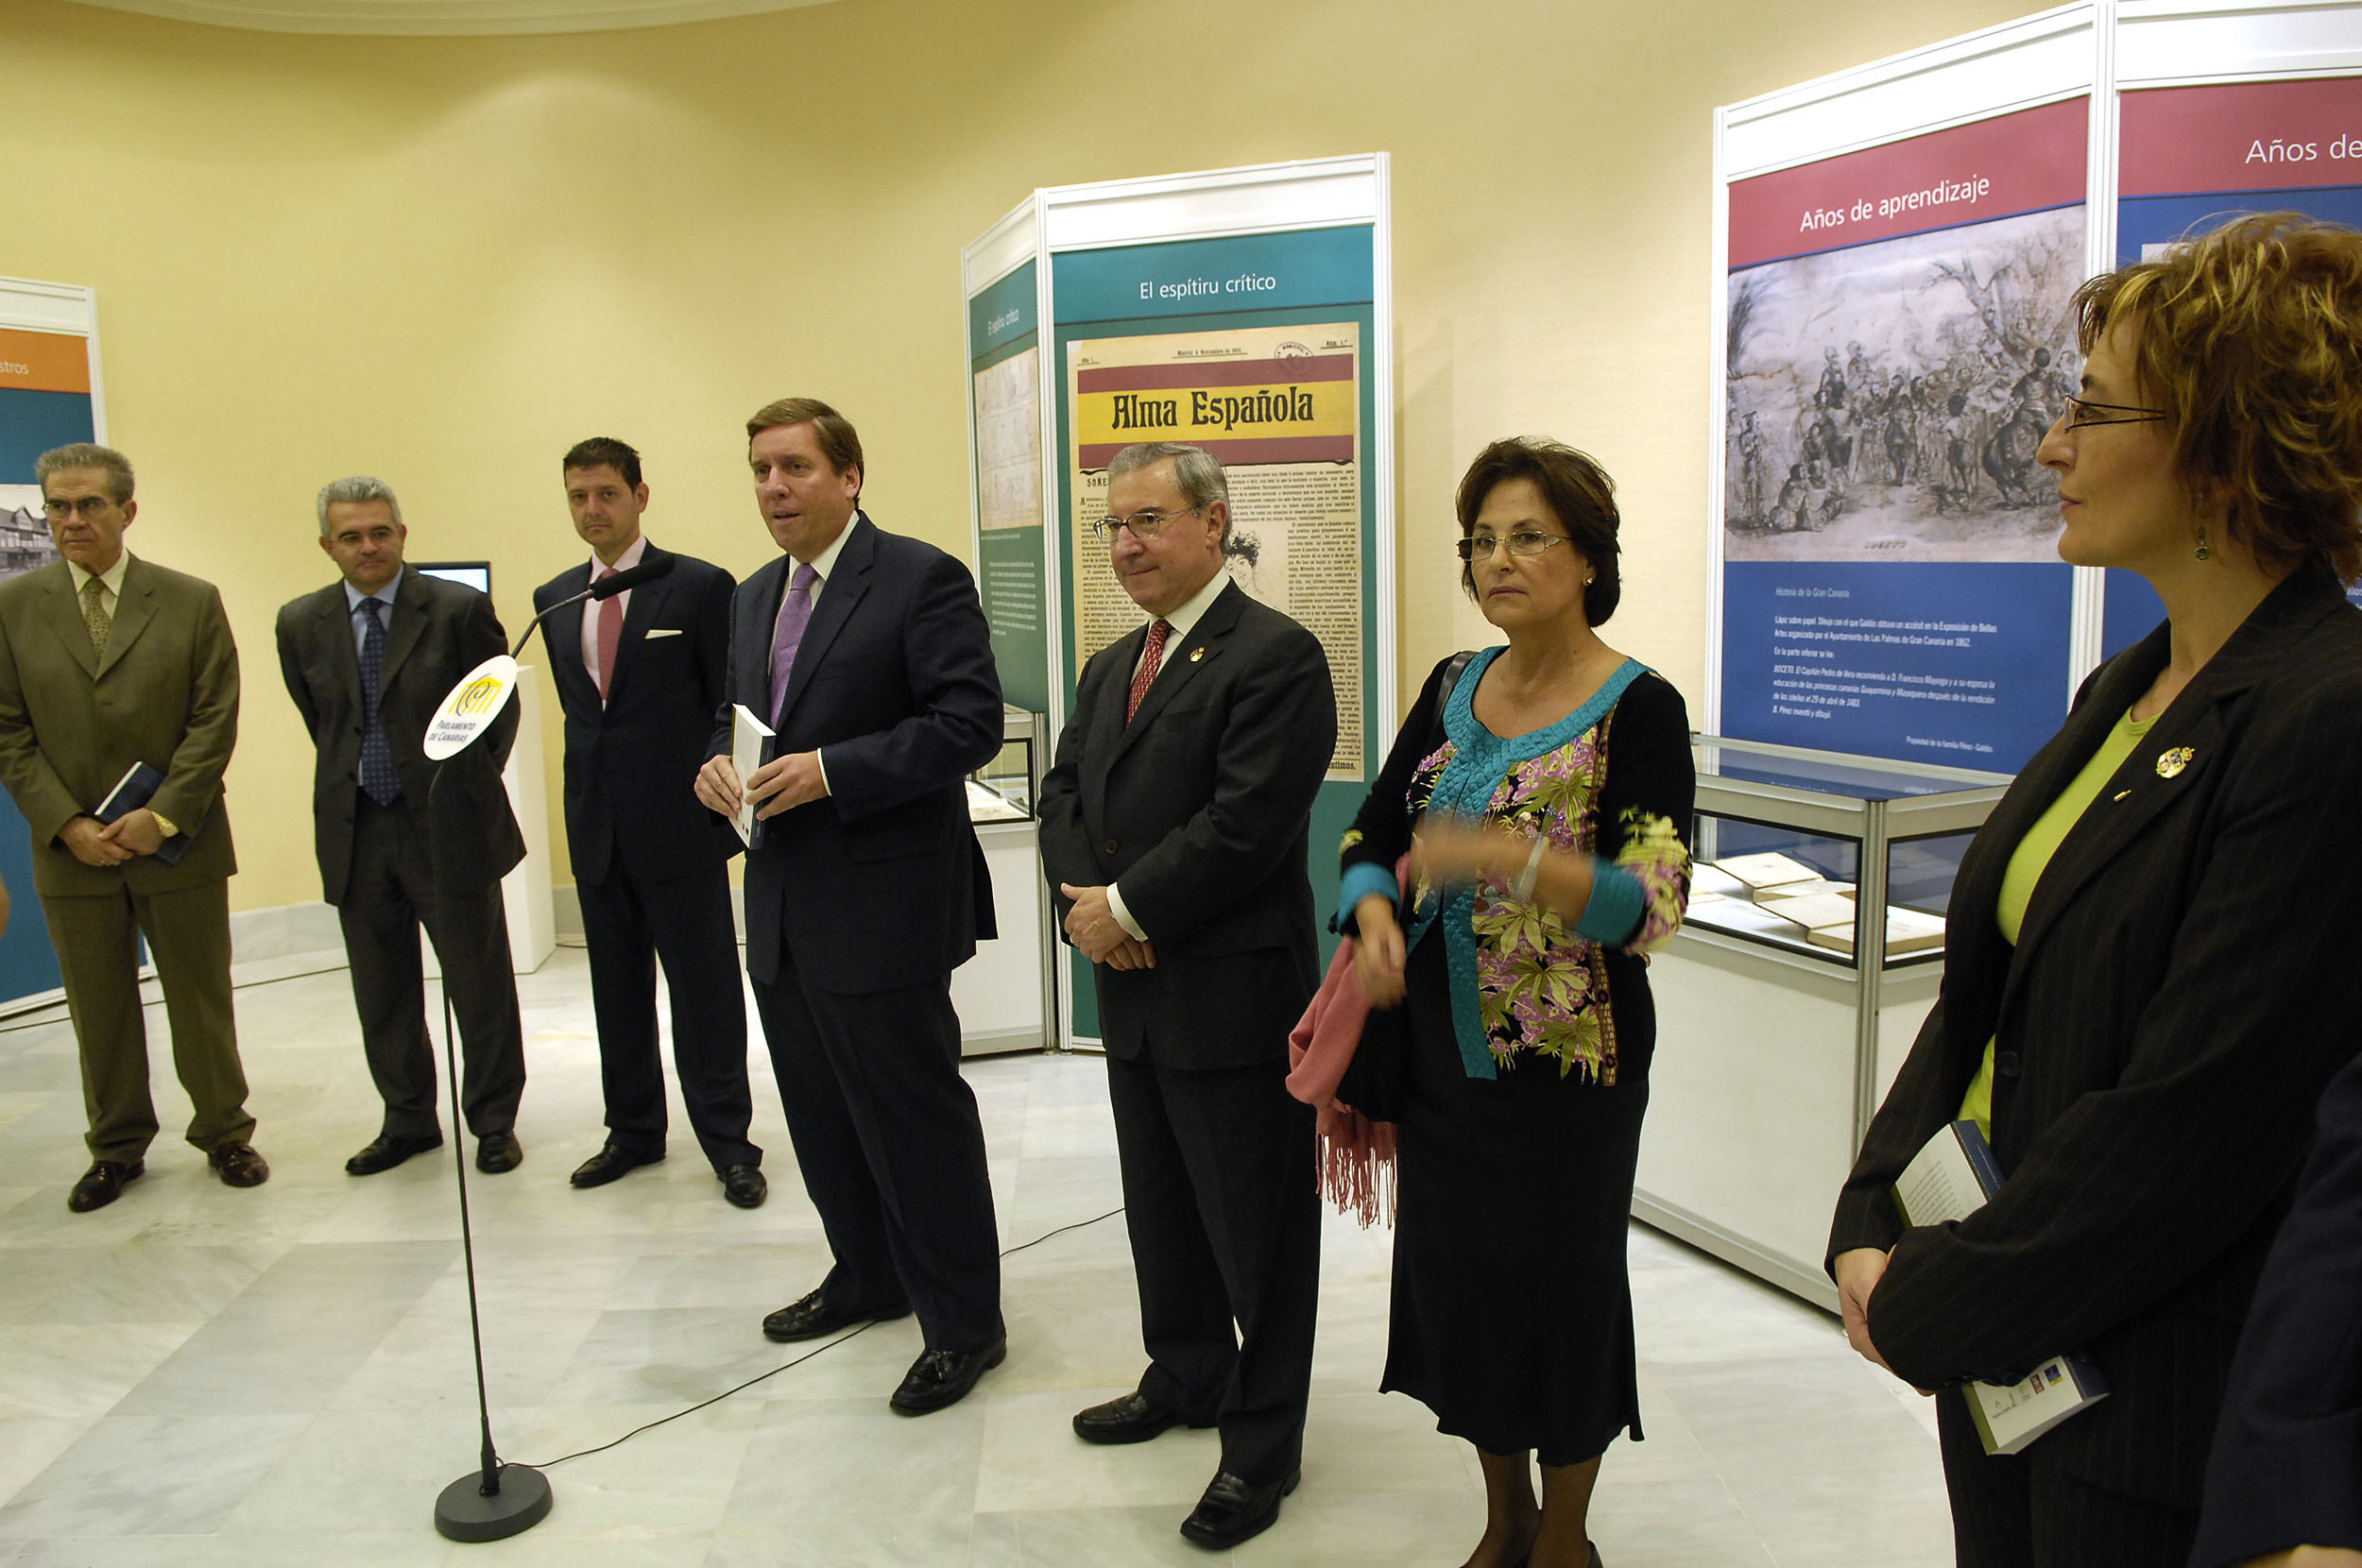 Los presidentes de los parlamentos de Cantabria y Canarias presentaron en Santa Cruz de Tenerife el libro Galdós en su tiempo